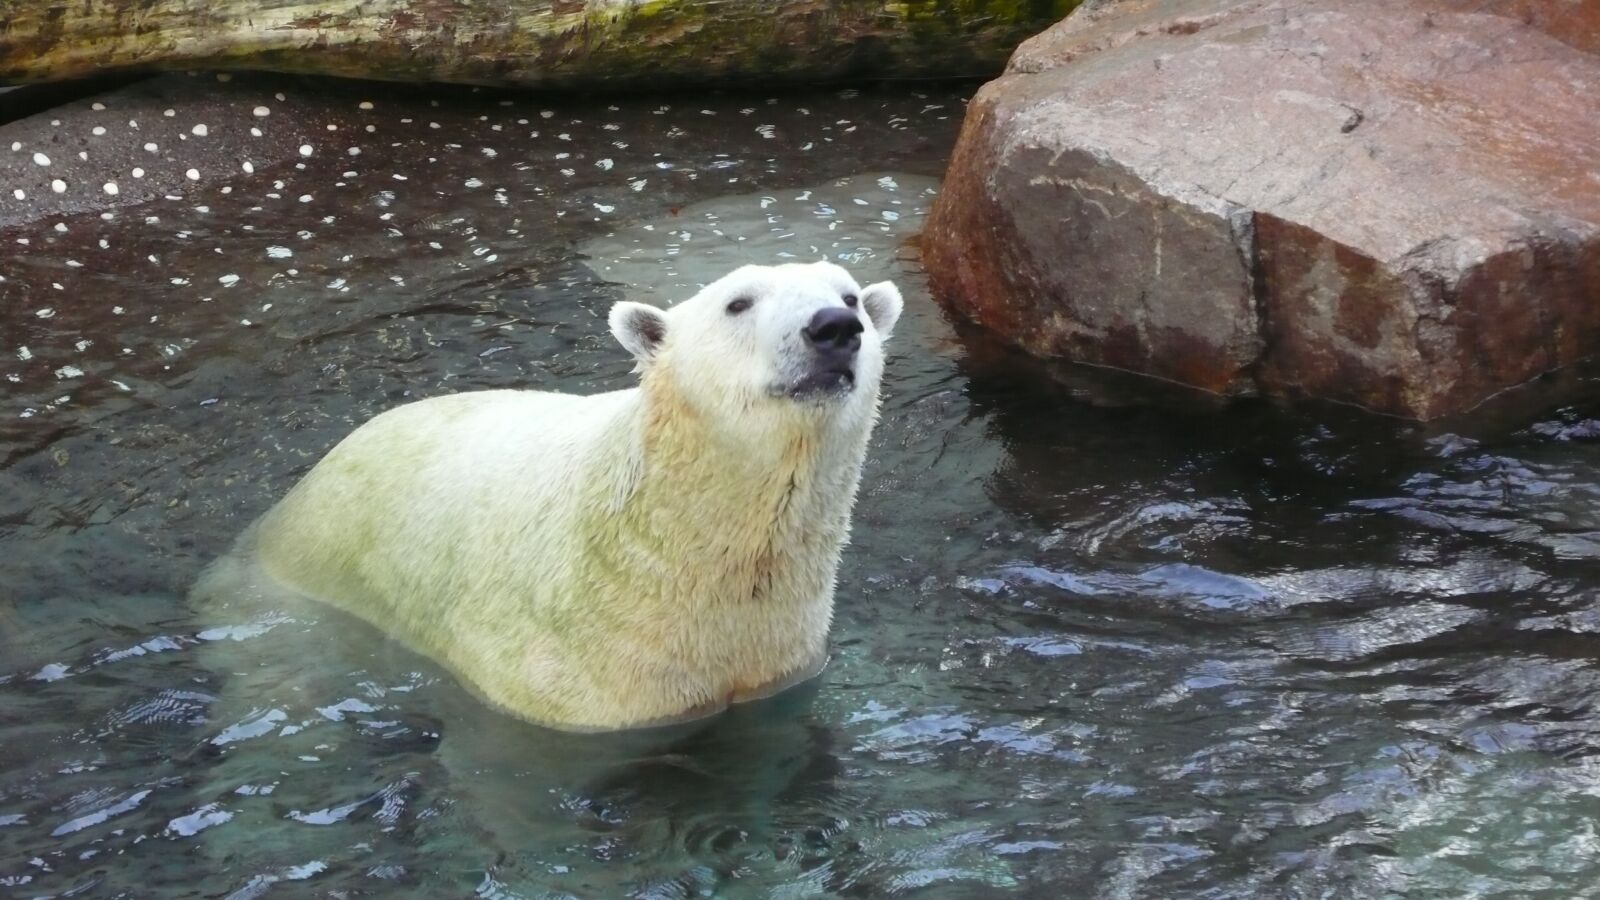 Panasonic DMC-LX2 sample photo. Polar bear, white bear photography